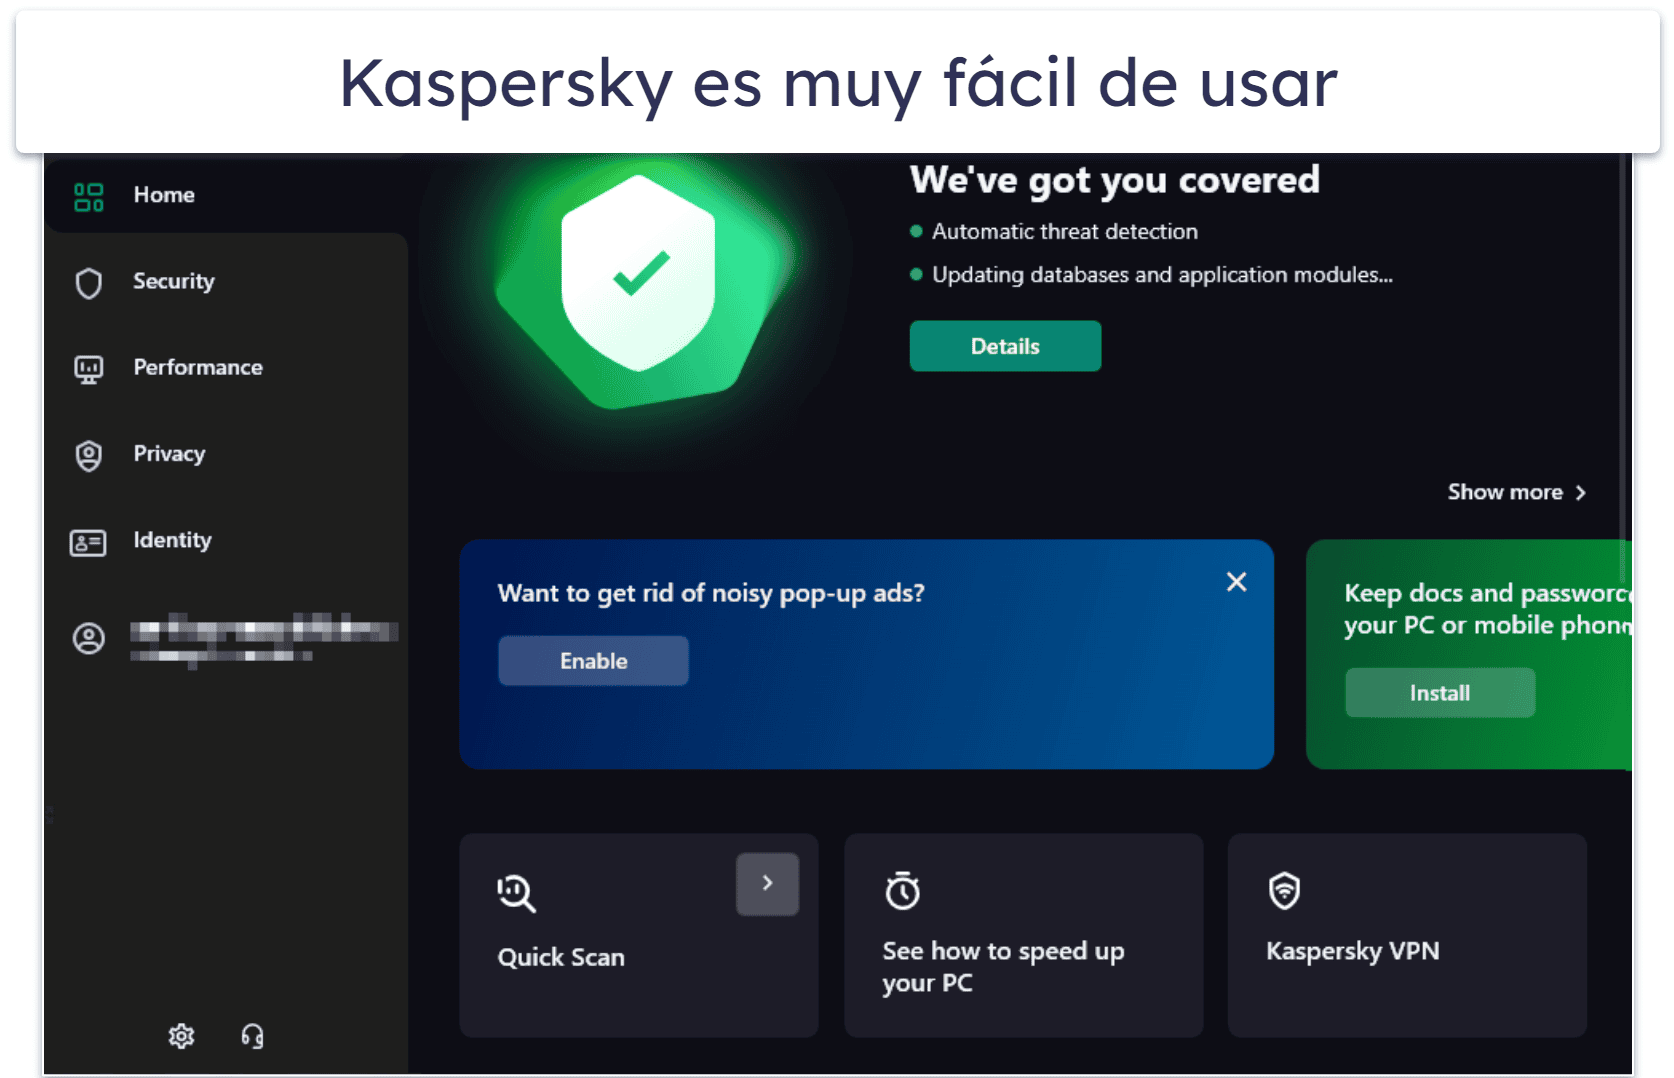 8. Kaspersky Premium — El más fácil de usar